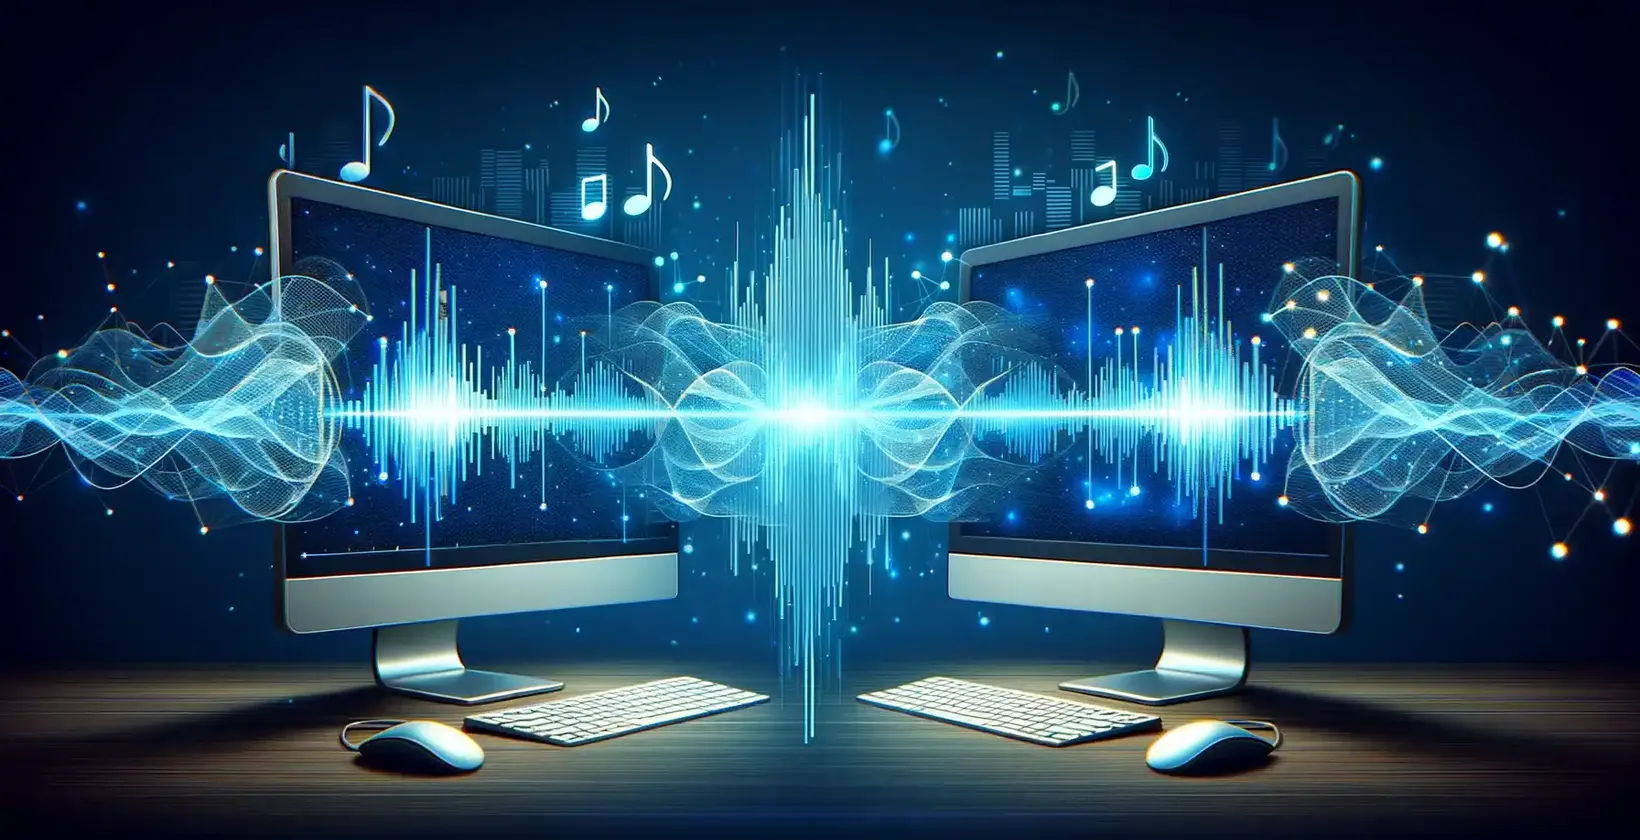 Due schermi di computer che mostrano note musicali e onde sonore, illustrando la visualizzazione audio.